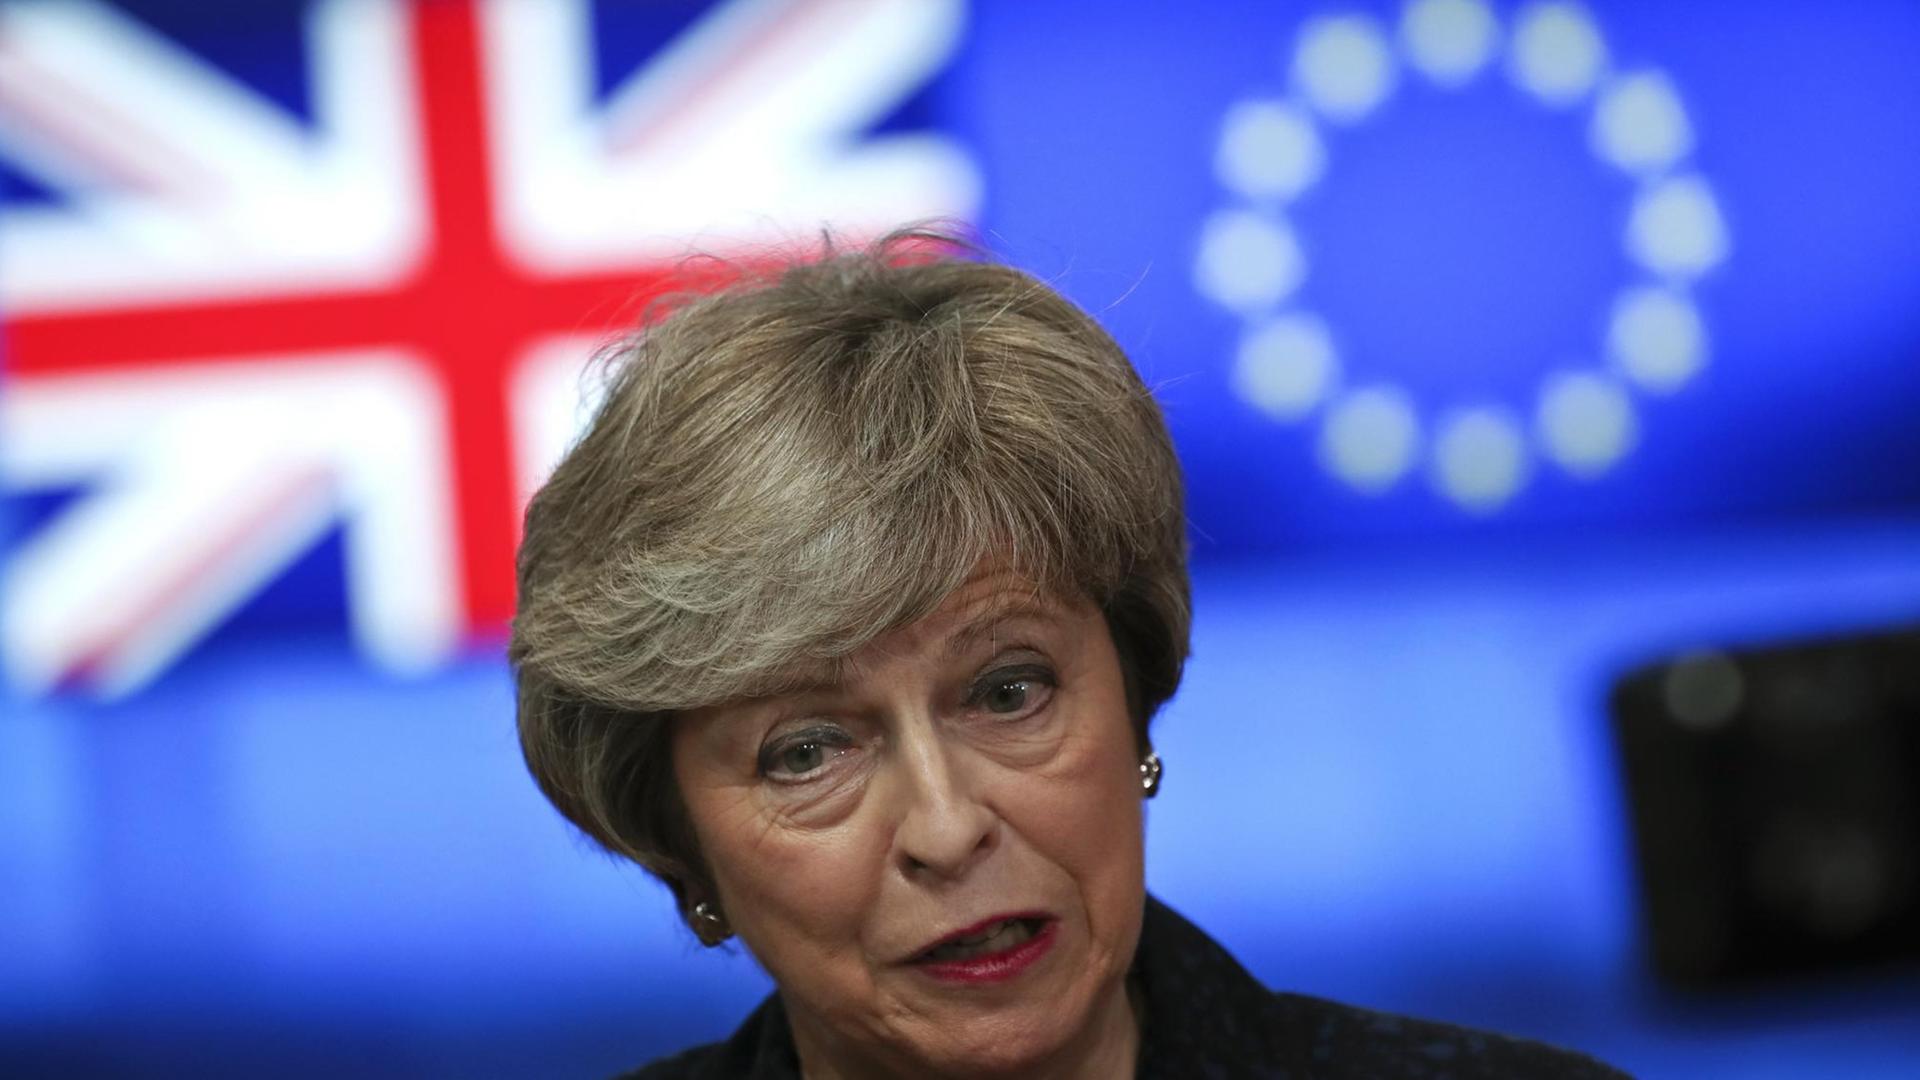 Theresa May, Premierministerin von Großbritannien, steht vor einem Bildschirm mit den Flaggen Großbritanniens und der EU.